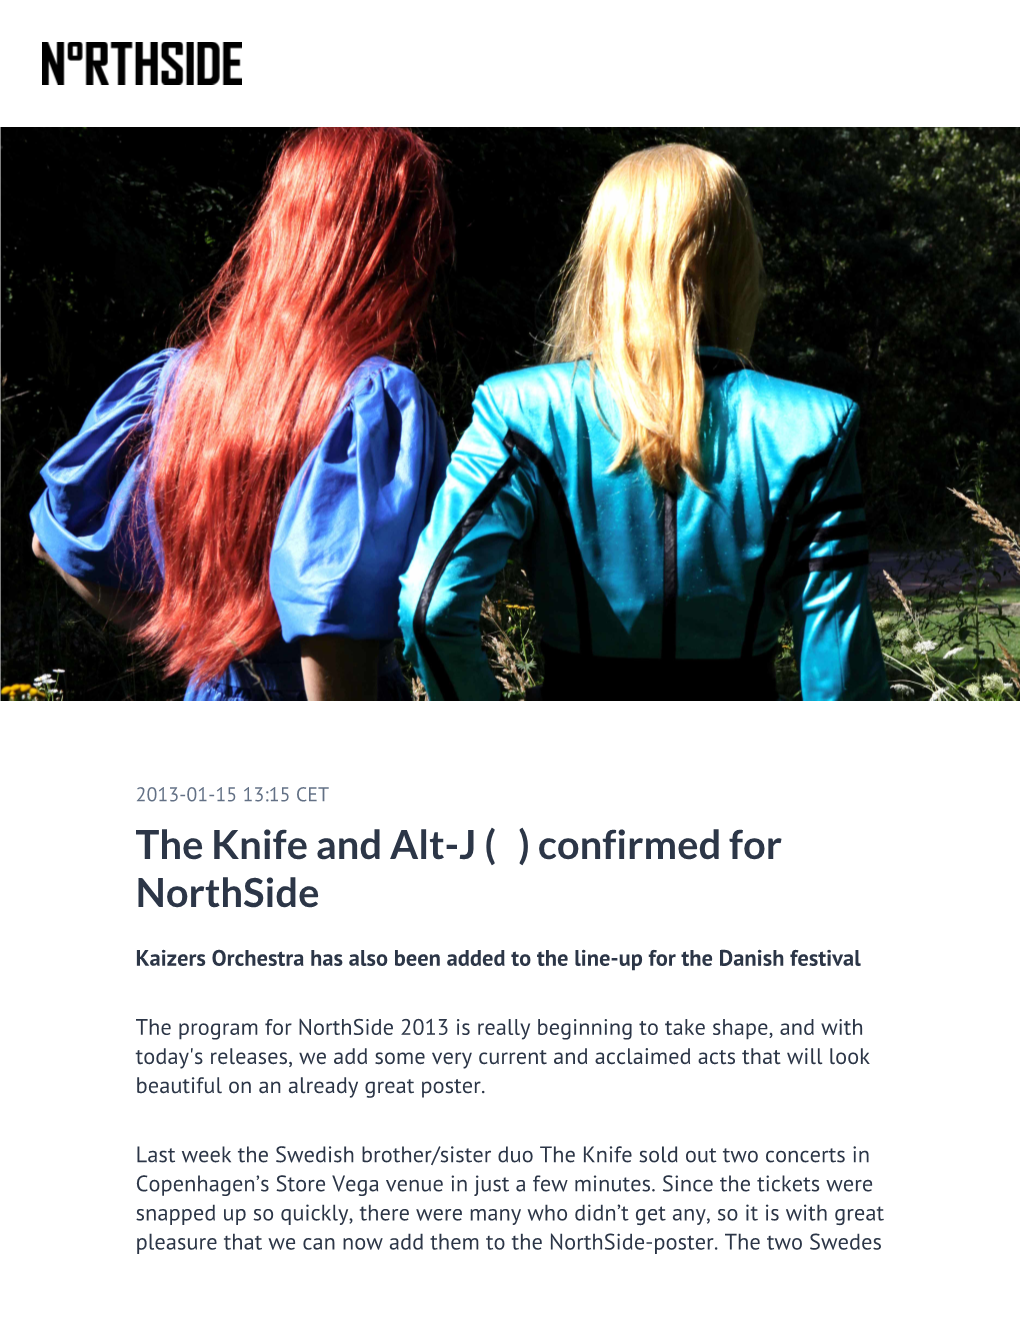 The Knife and Alt-J (Δ) Confirmed for Northside